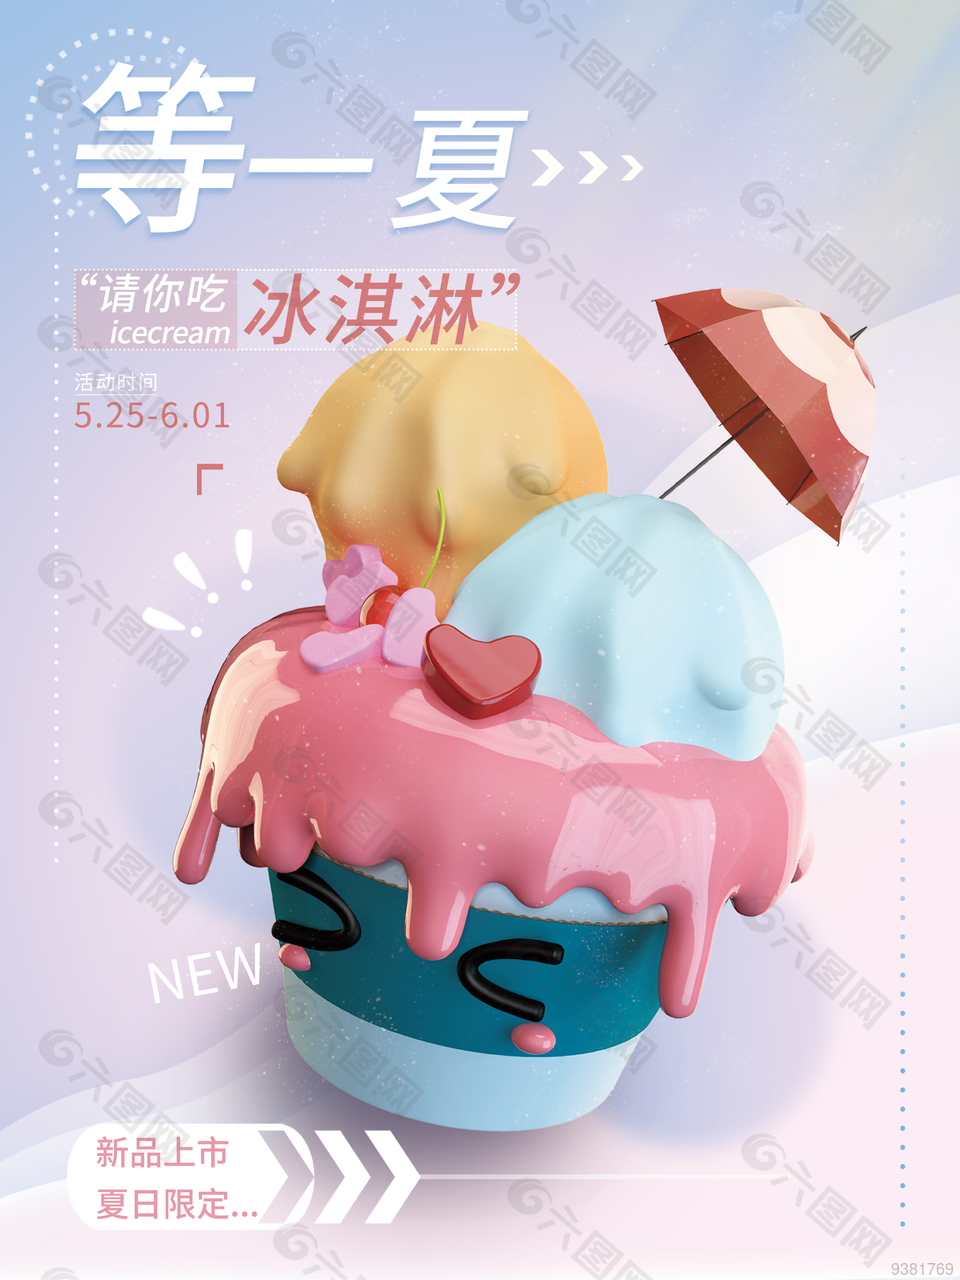 冰淇淋新品上市活动宣传海报